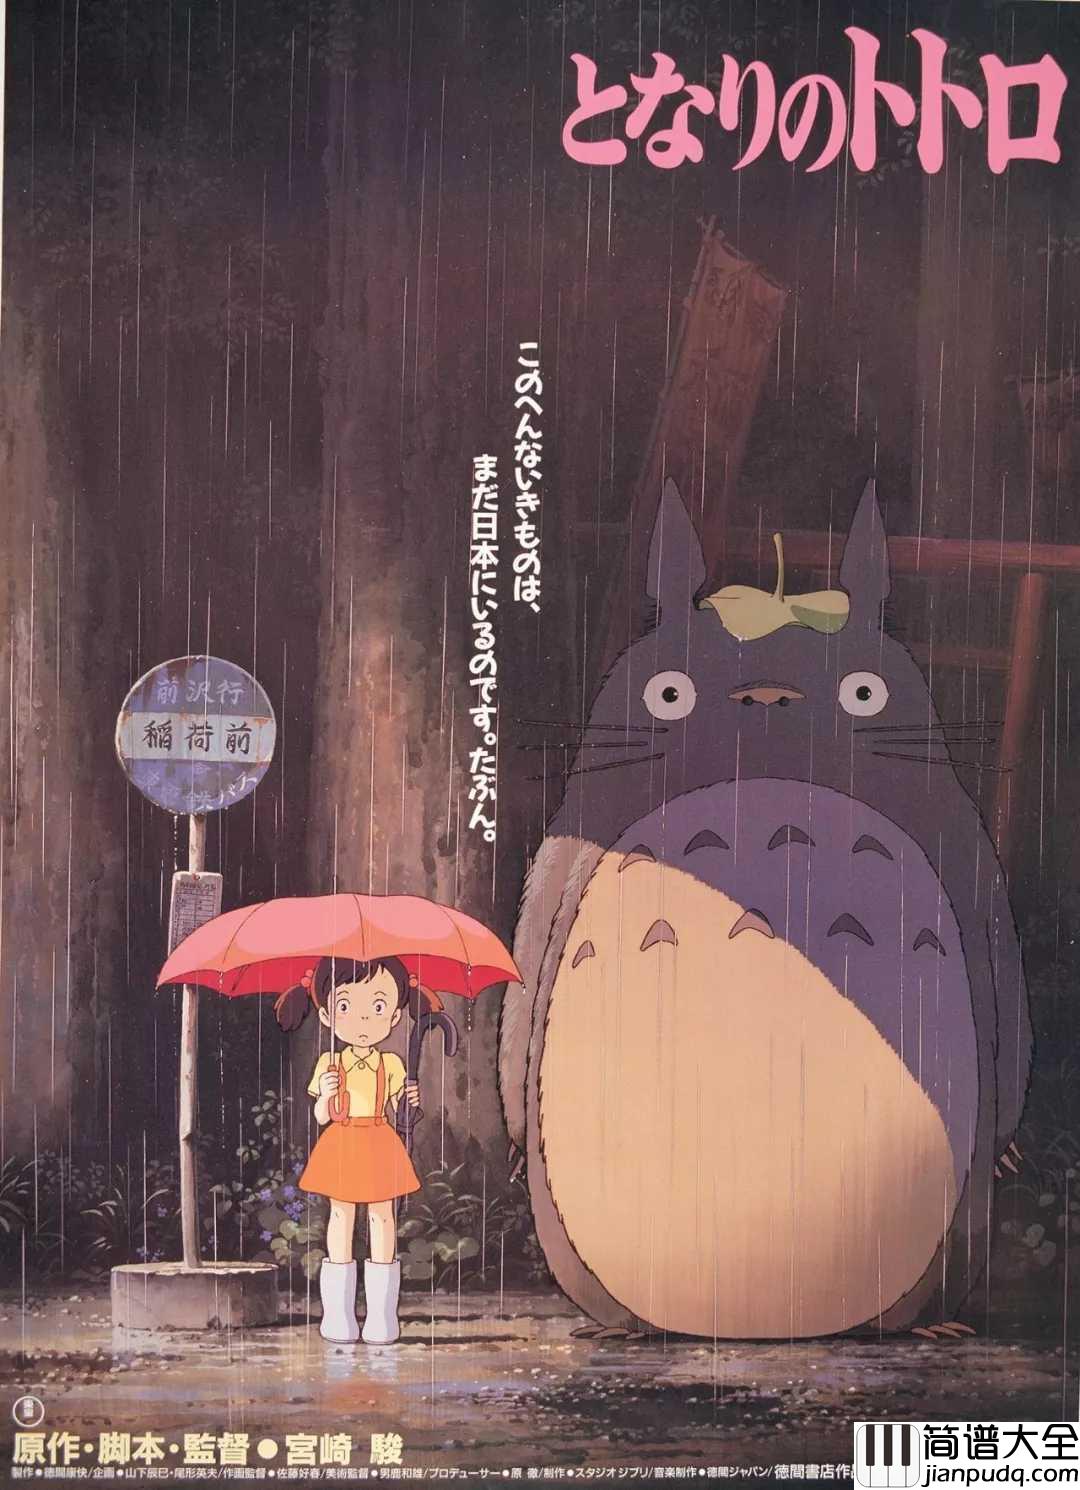 My_Neighbor_Totoro_Theme（龙猫主题曲）简谱_久石譲____孩子眼里的东西，长大了再也看不到